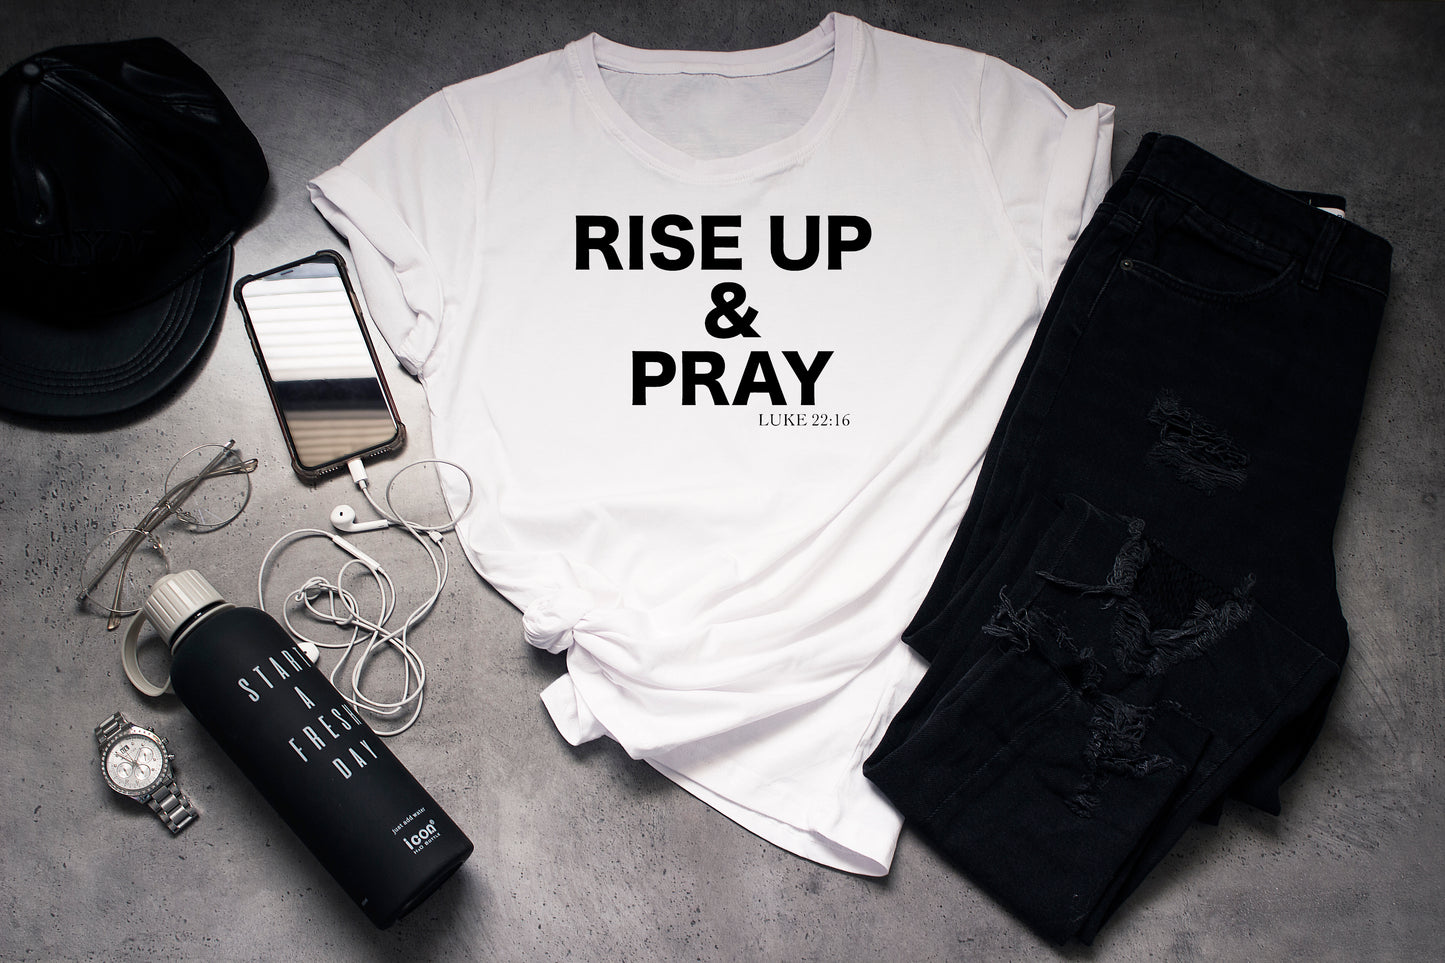 Rise Up & Pray - Luke 22:16